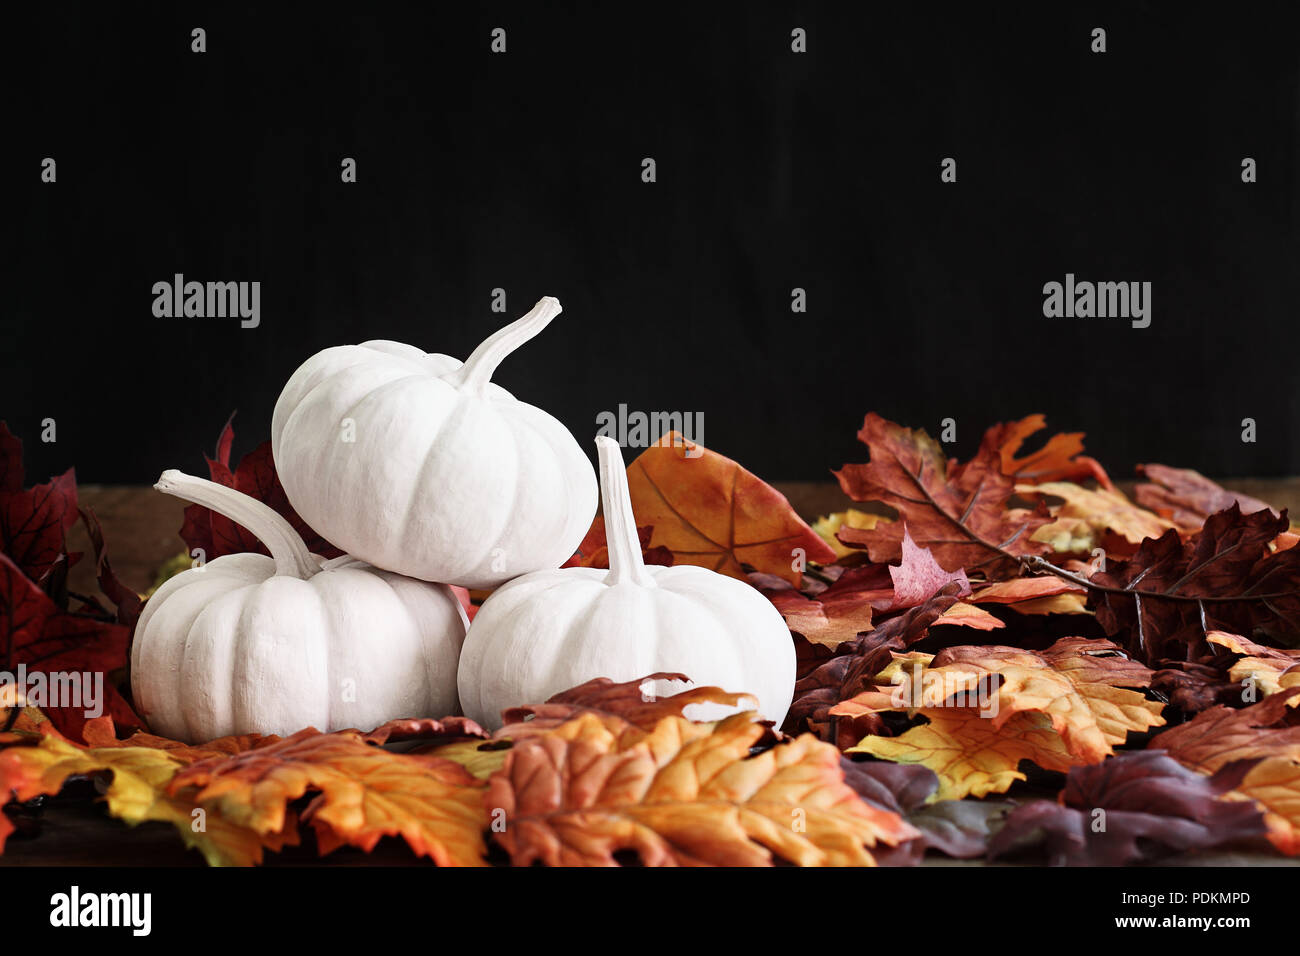 Herbstlaub um einen Stapel von drei weißen Kürbisse verstreut. Extrem flache Tiefenschärfe mit selektiven Fokus auf pumkins. Freier Platz für Text. Stockfoto